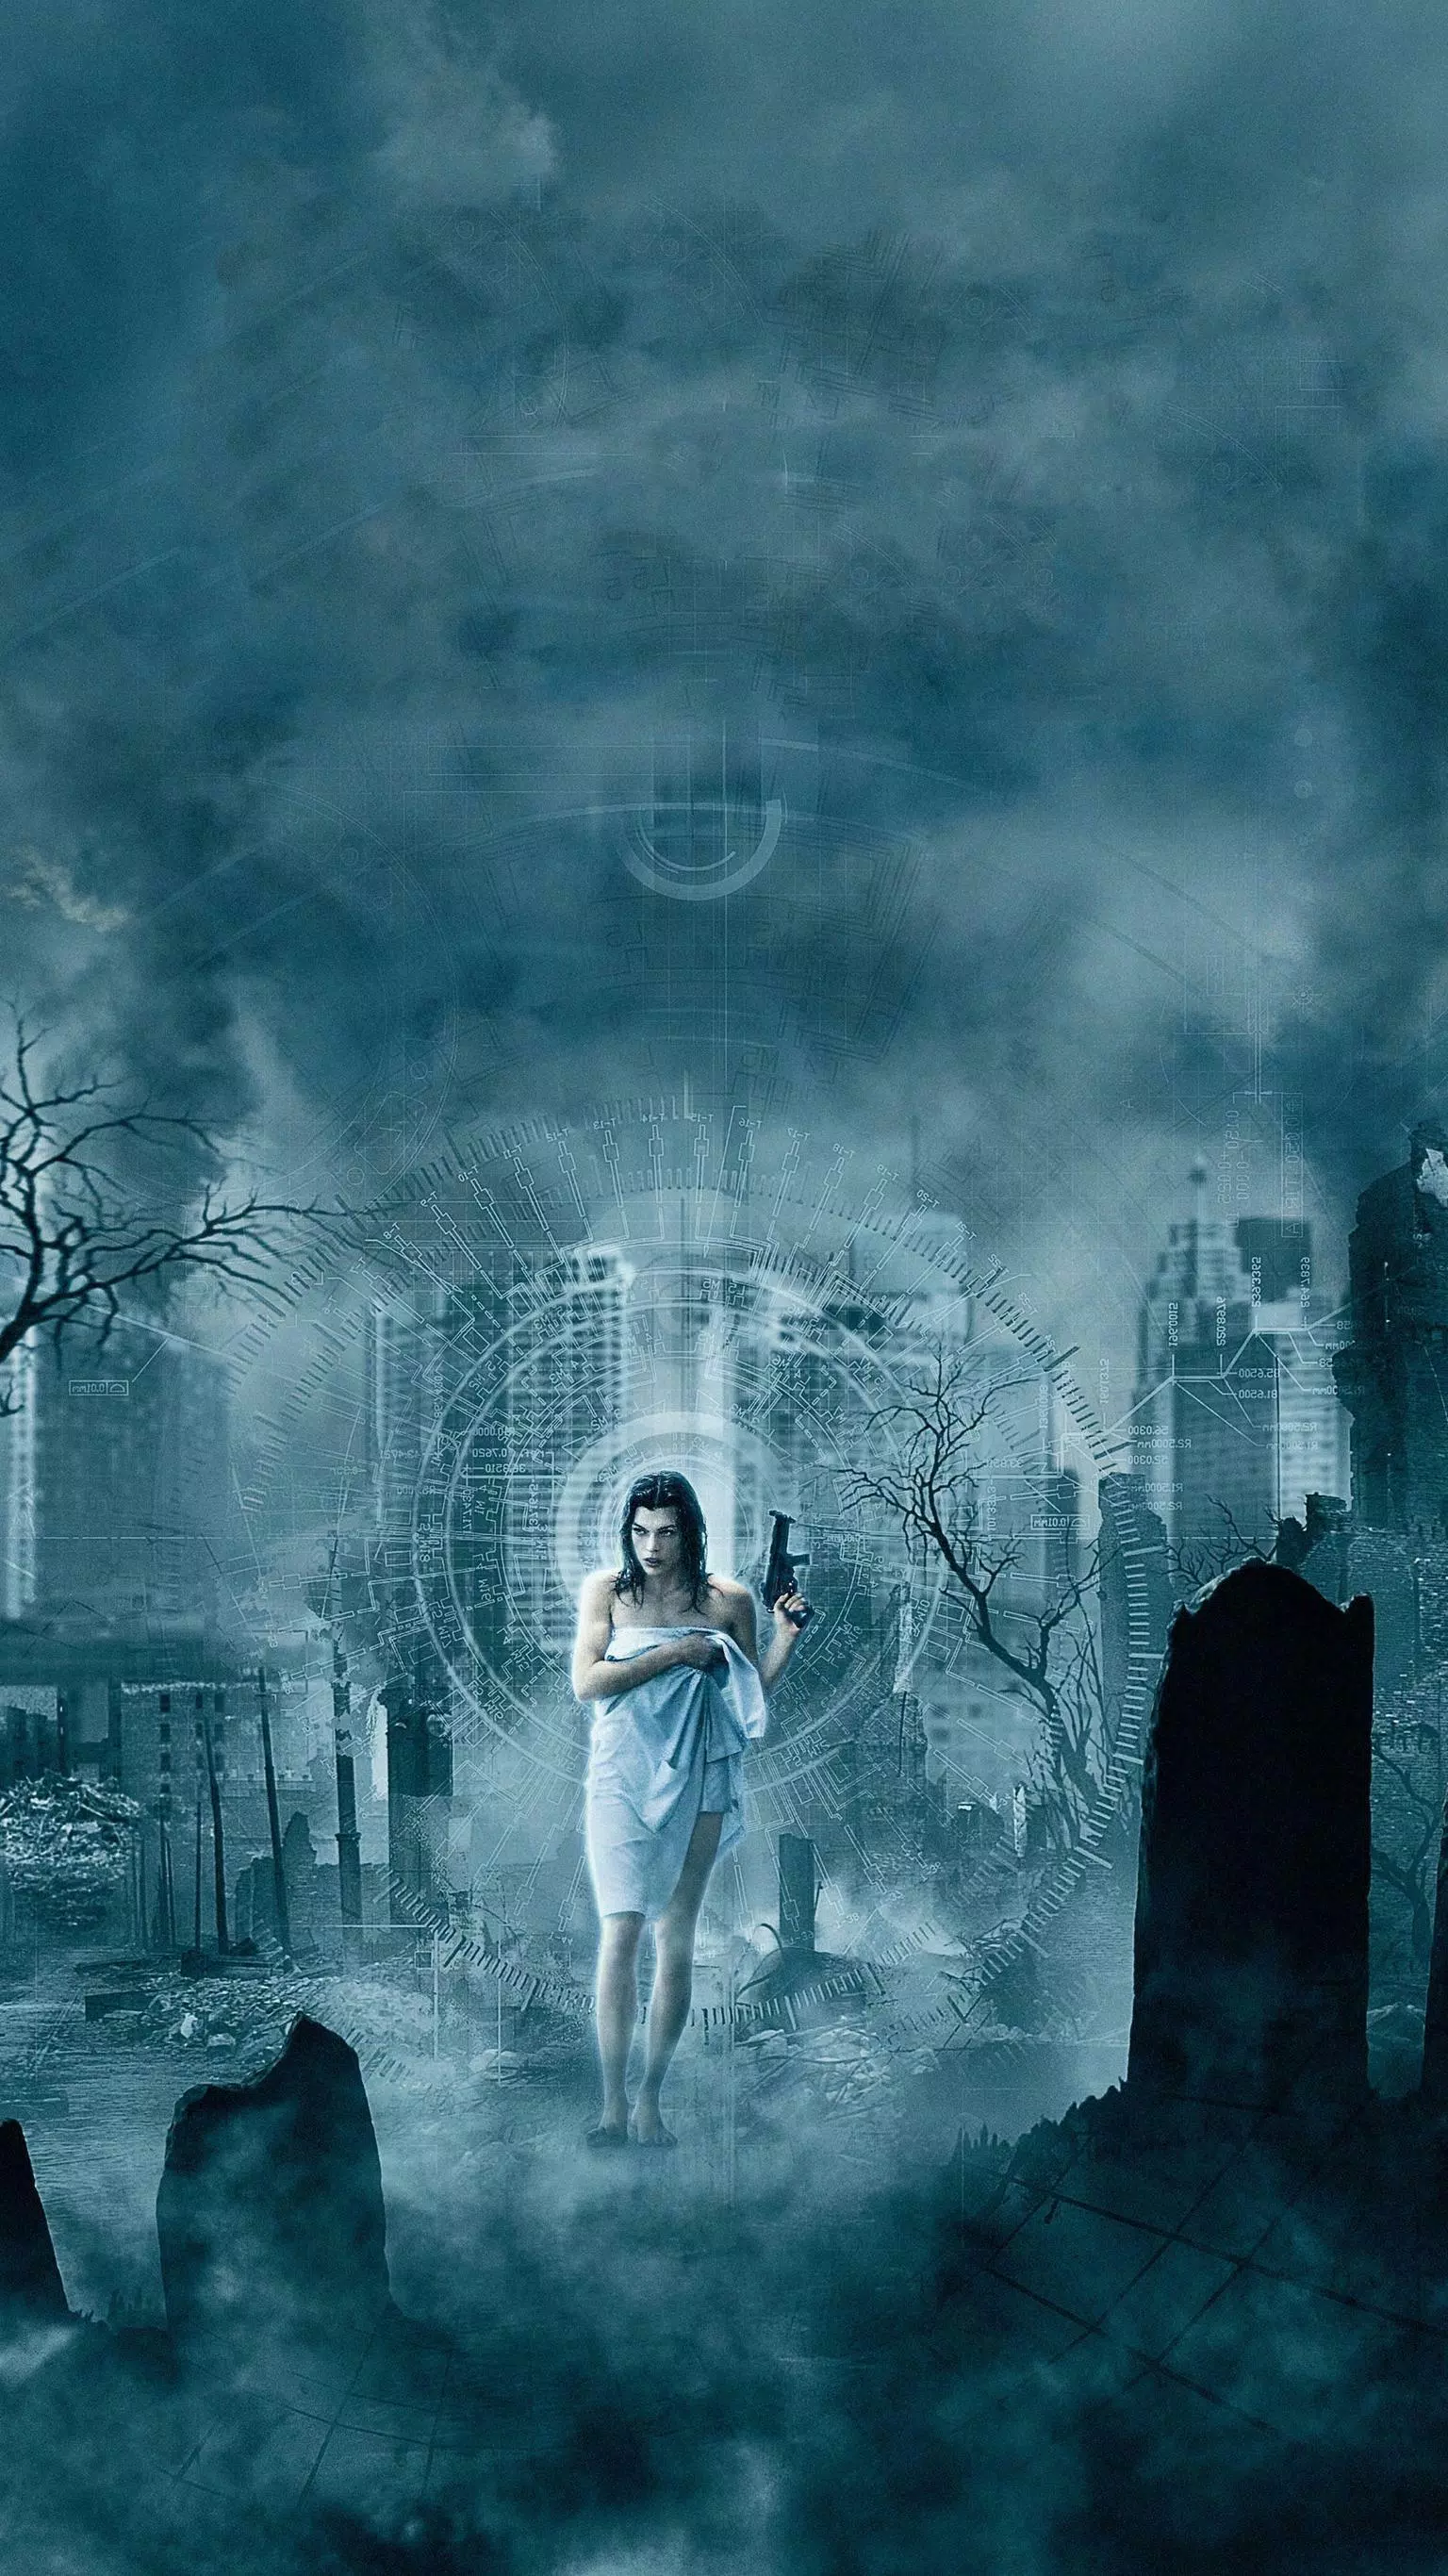  Resident Evil Hintergrundbild 1536x2732. Ultimate Resident Evil Wallpaper Collection APK für Android herunterladen